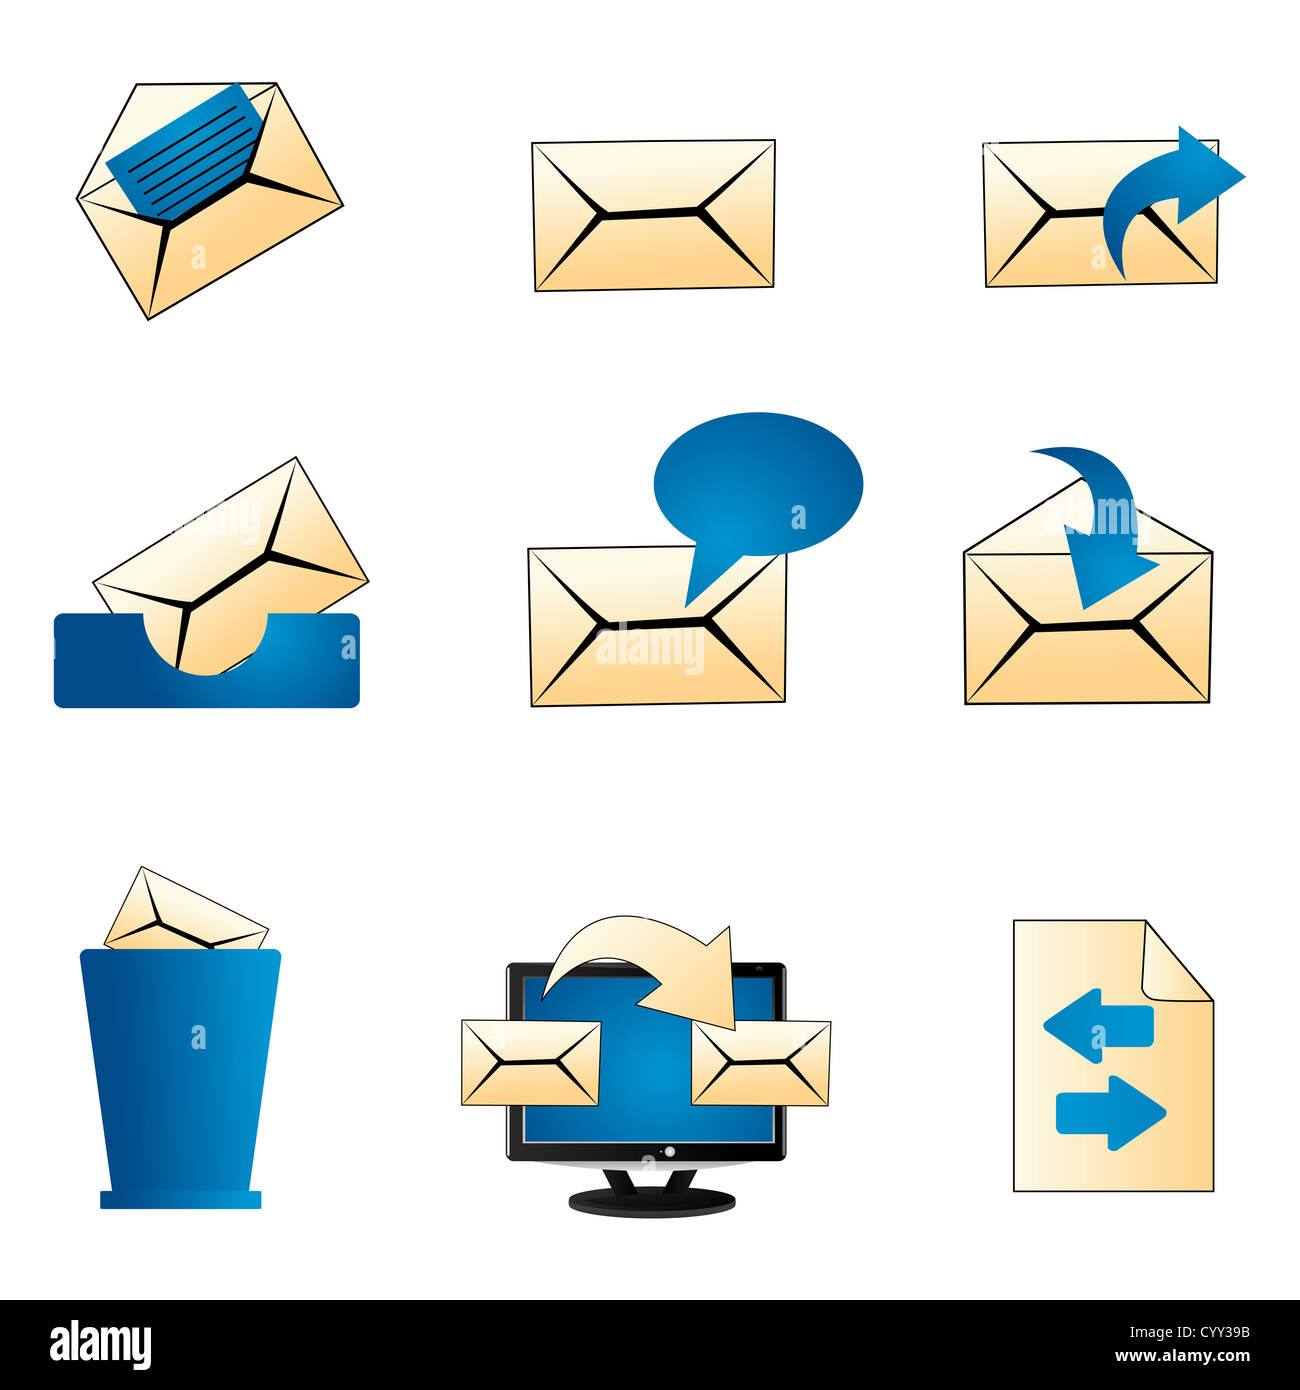 illustraion of set of mailing icons on isolated background Stock Photo